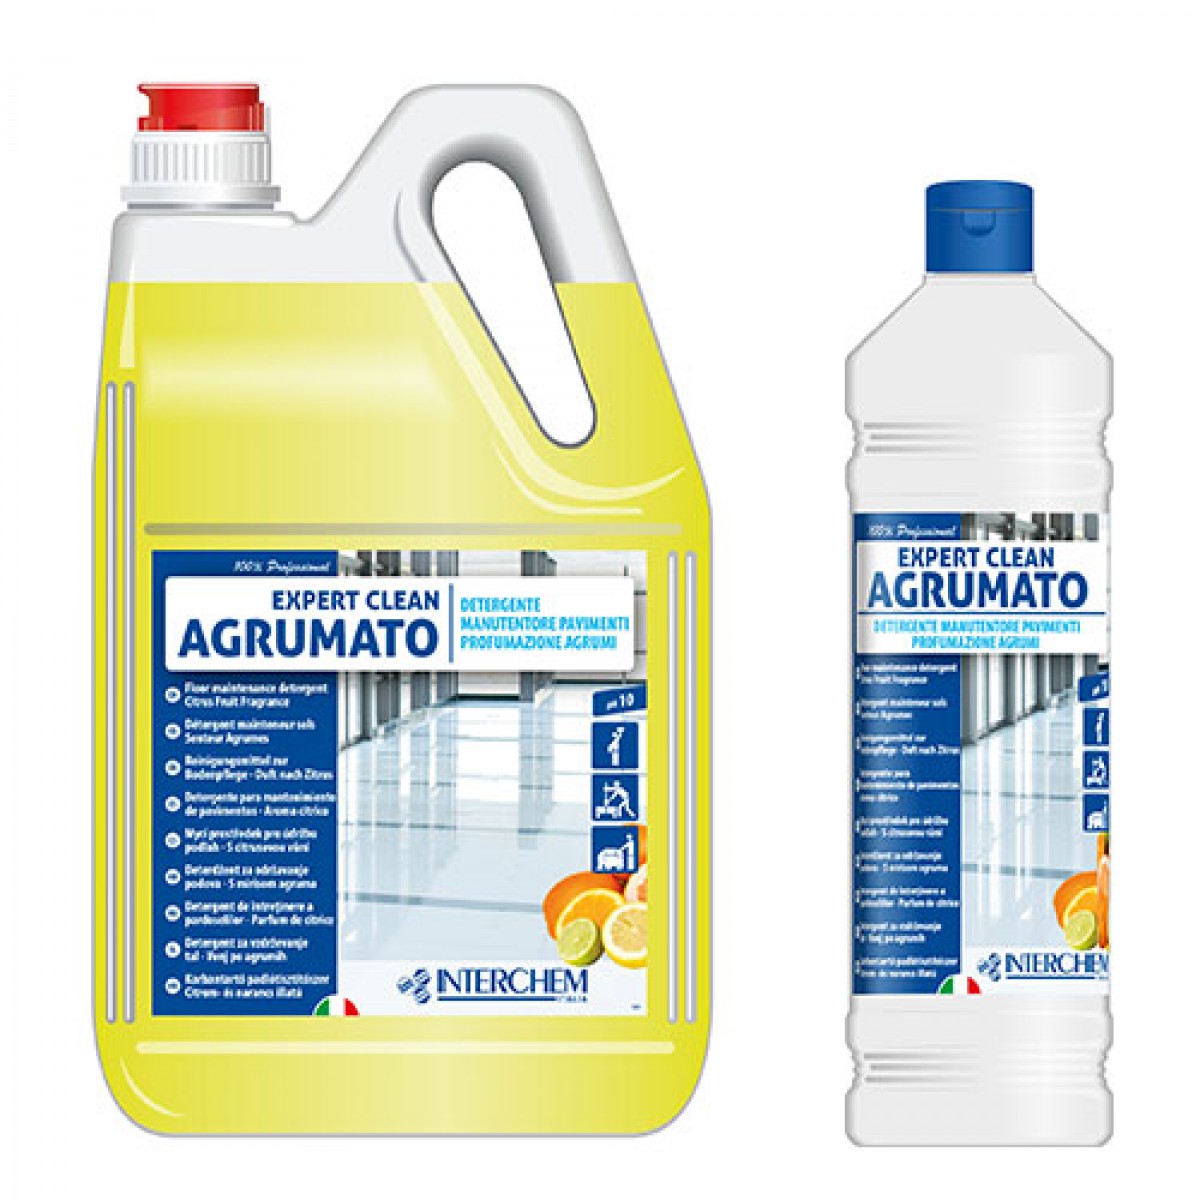 EXPERT CLEAN 1 LIT - Univerzalno sredstvo
za čišćenje svih tvrdih površina / miris agruma